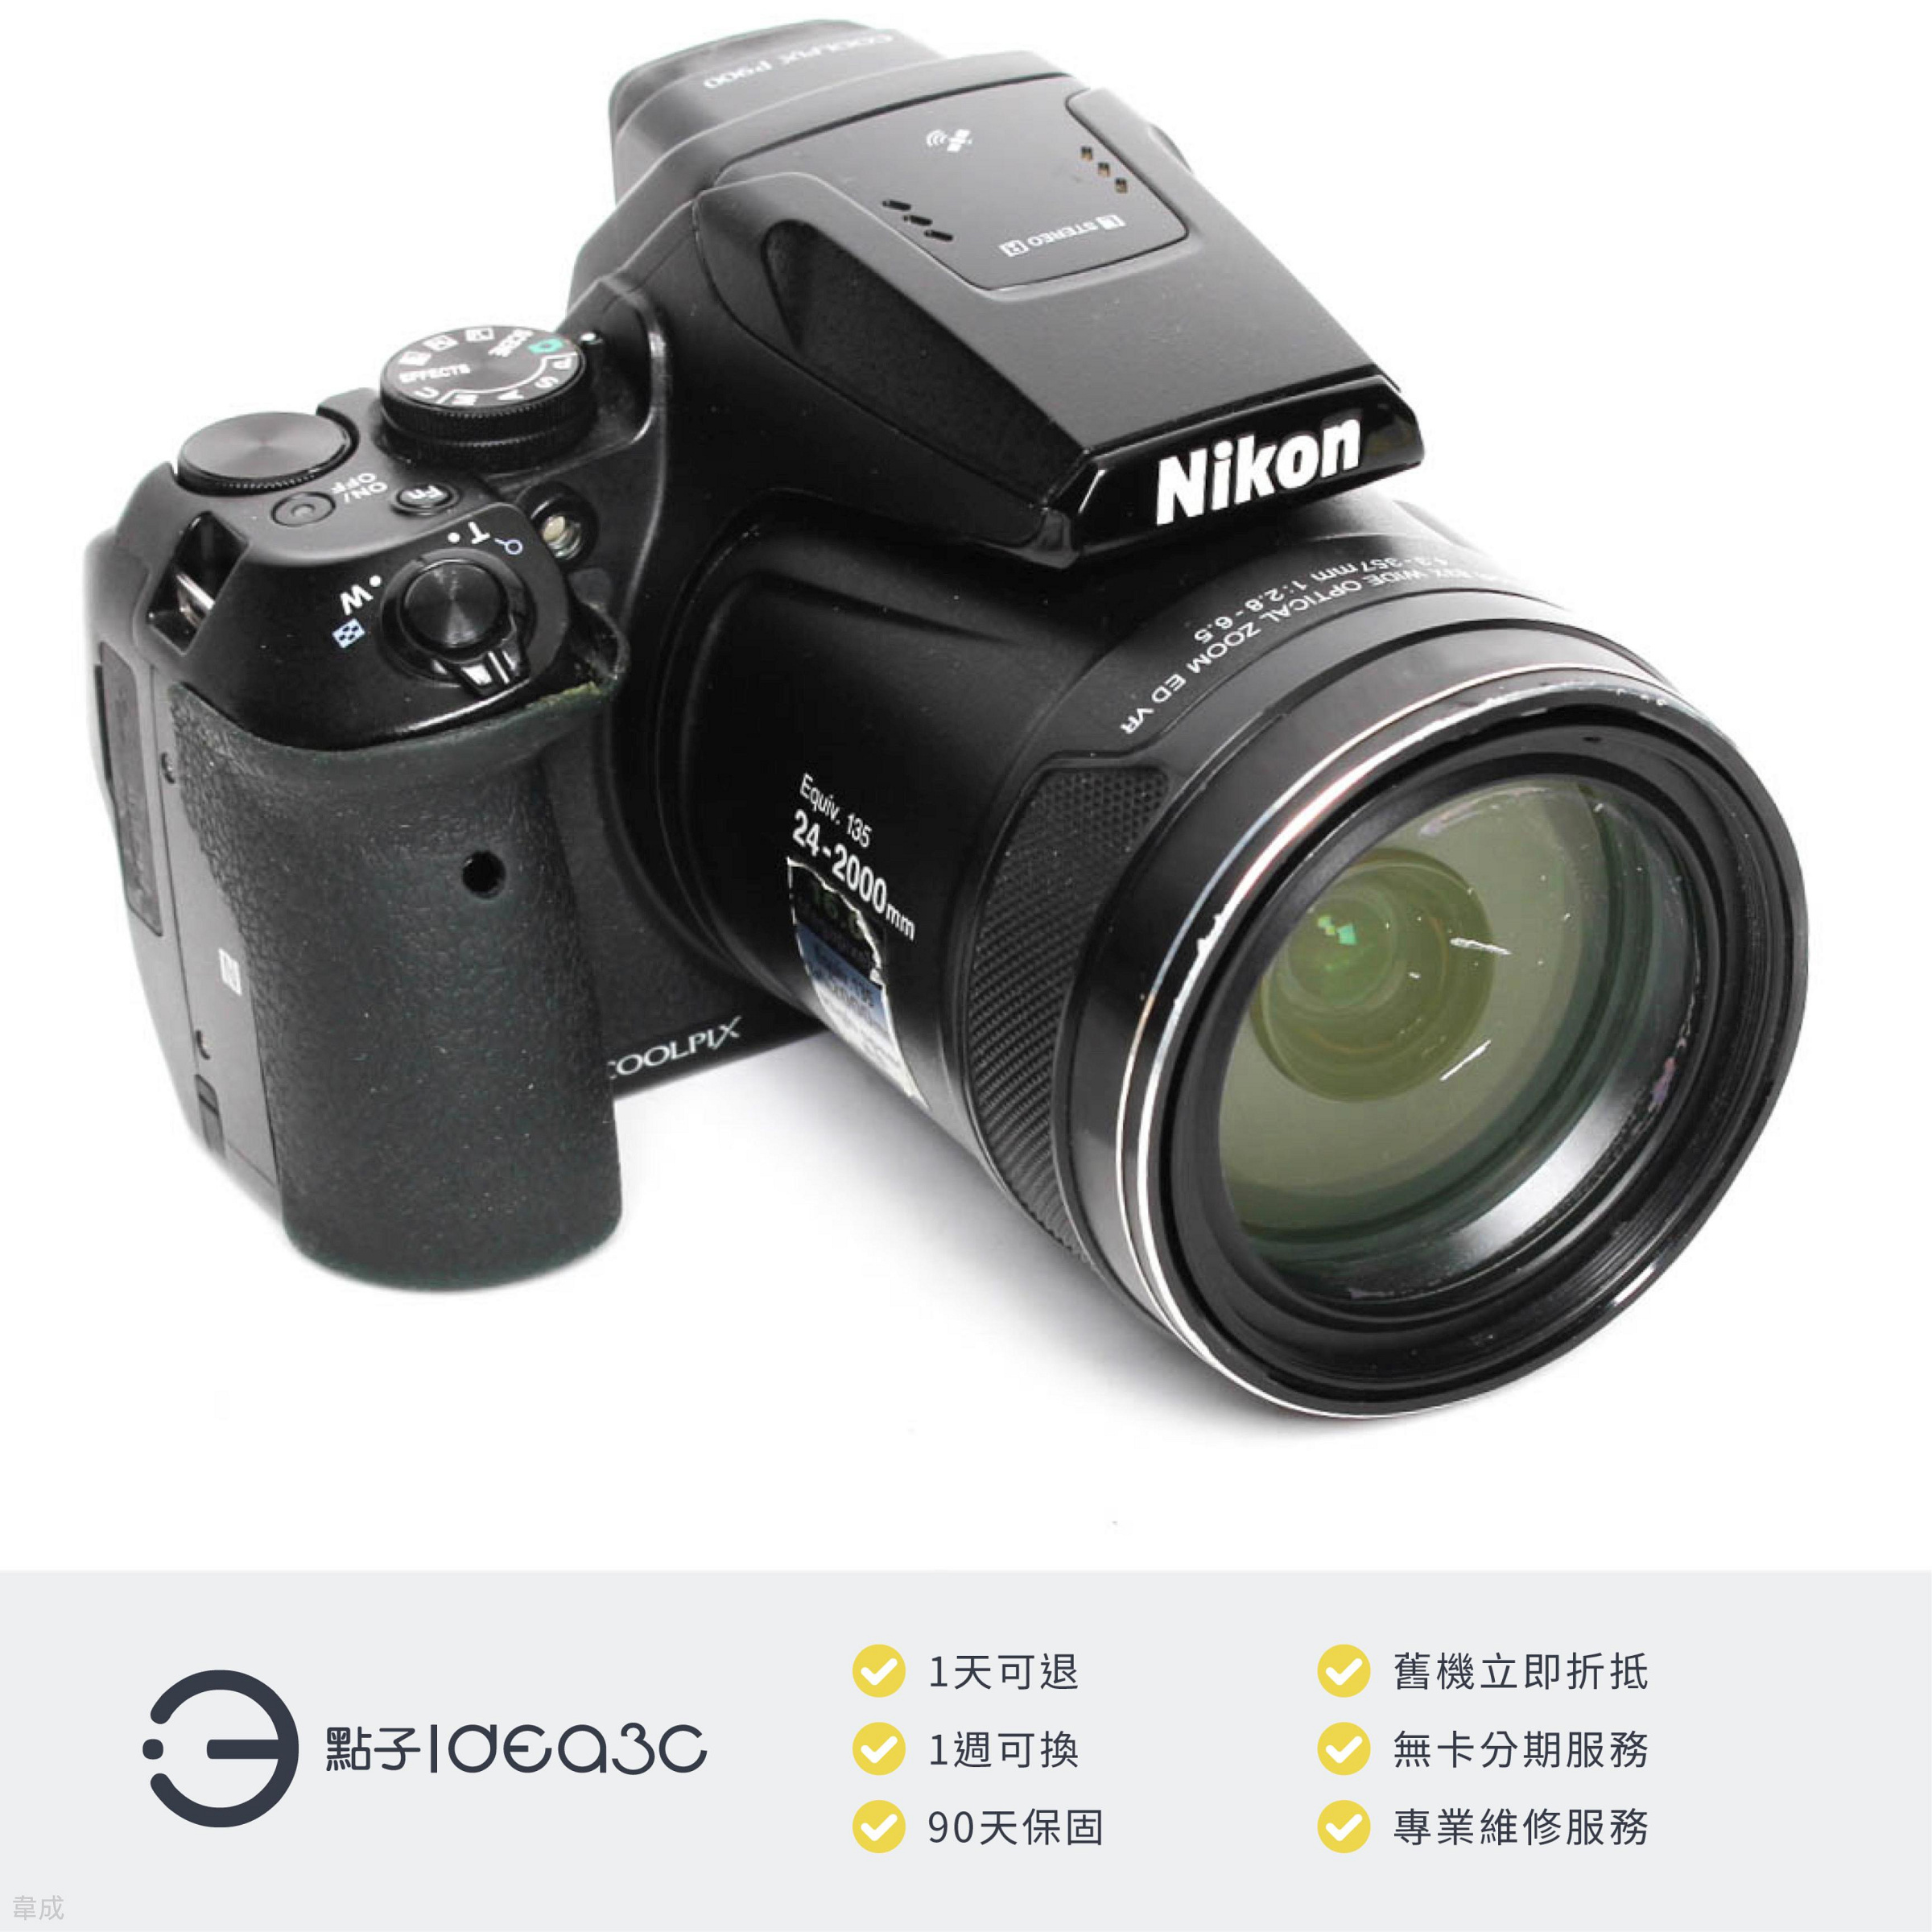 「點子3C」Nikon COOLPIX P900 平輸貨【店保3個月】83X光學變焦 1600萬畫素 3吋LCD螢幕 光學減震 類單眼相機 DM923